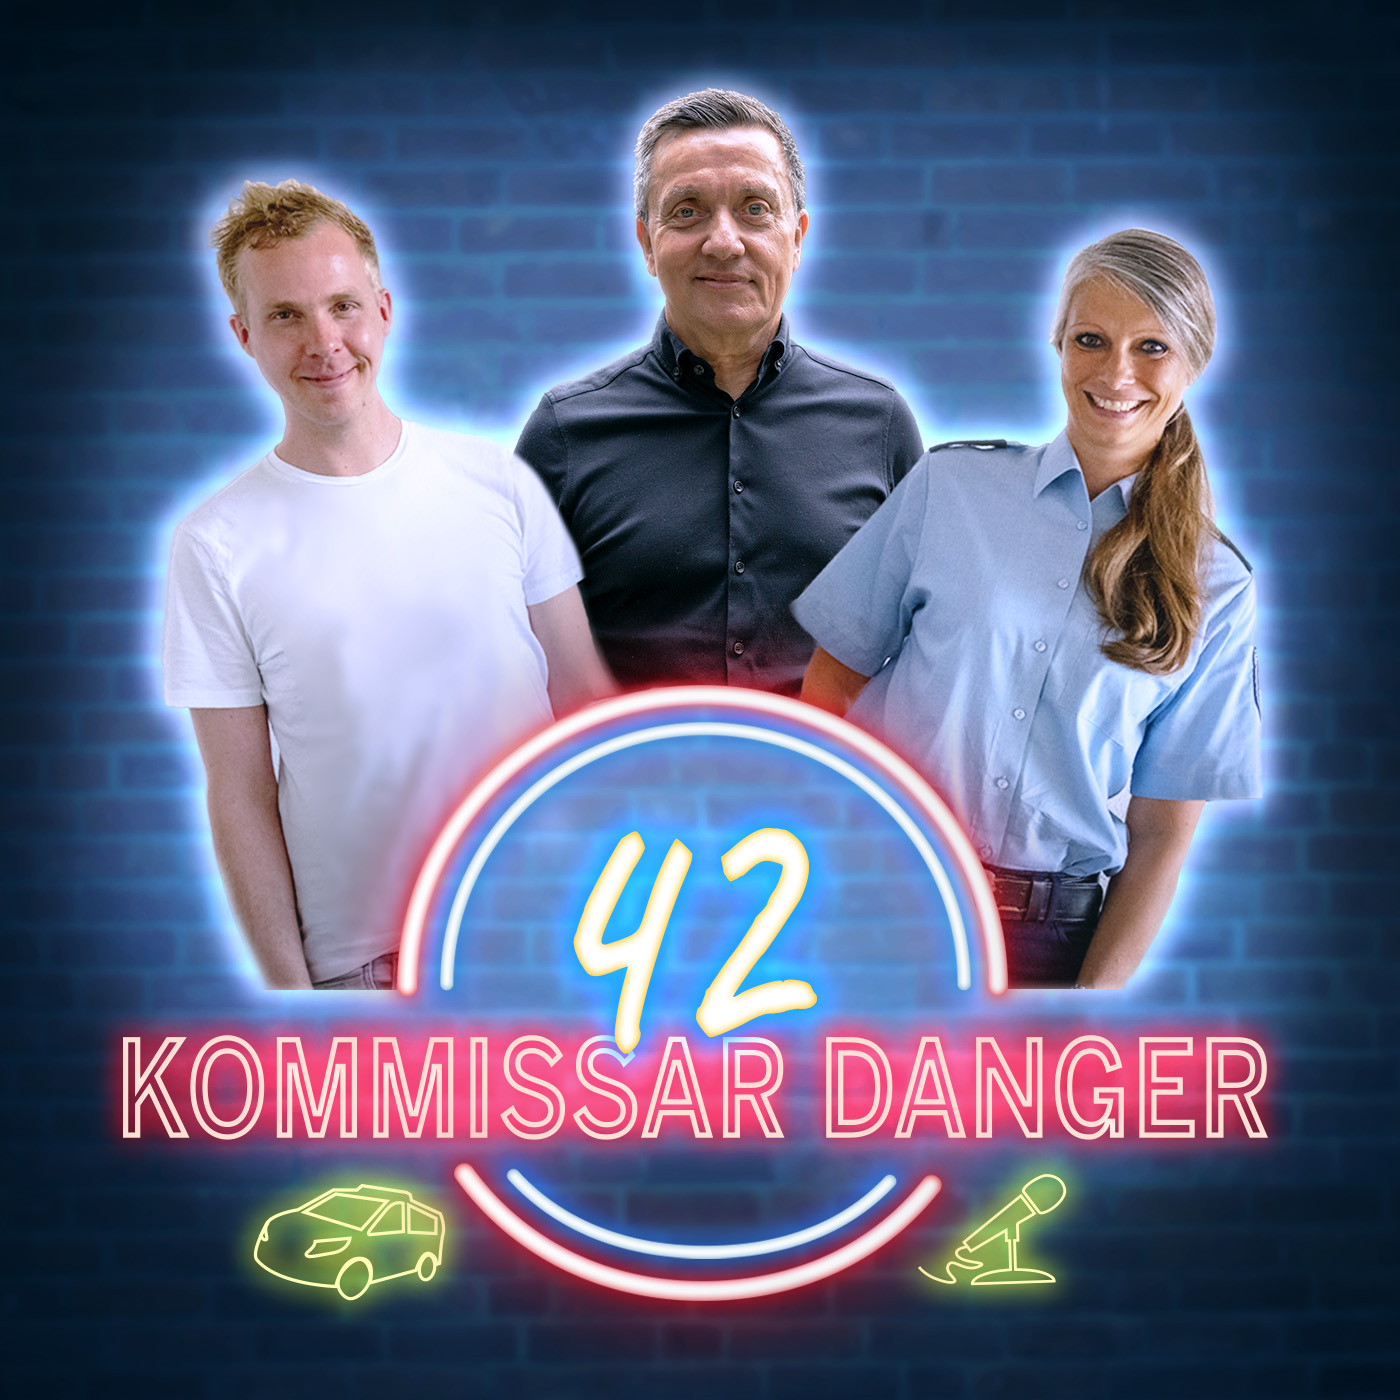 42 Cold Cases Kommissar Danger Podcast der Polizei NRW